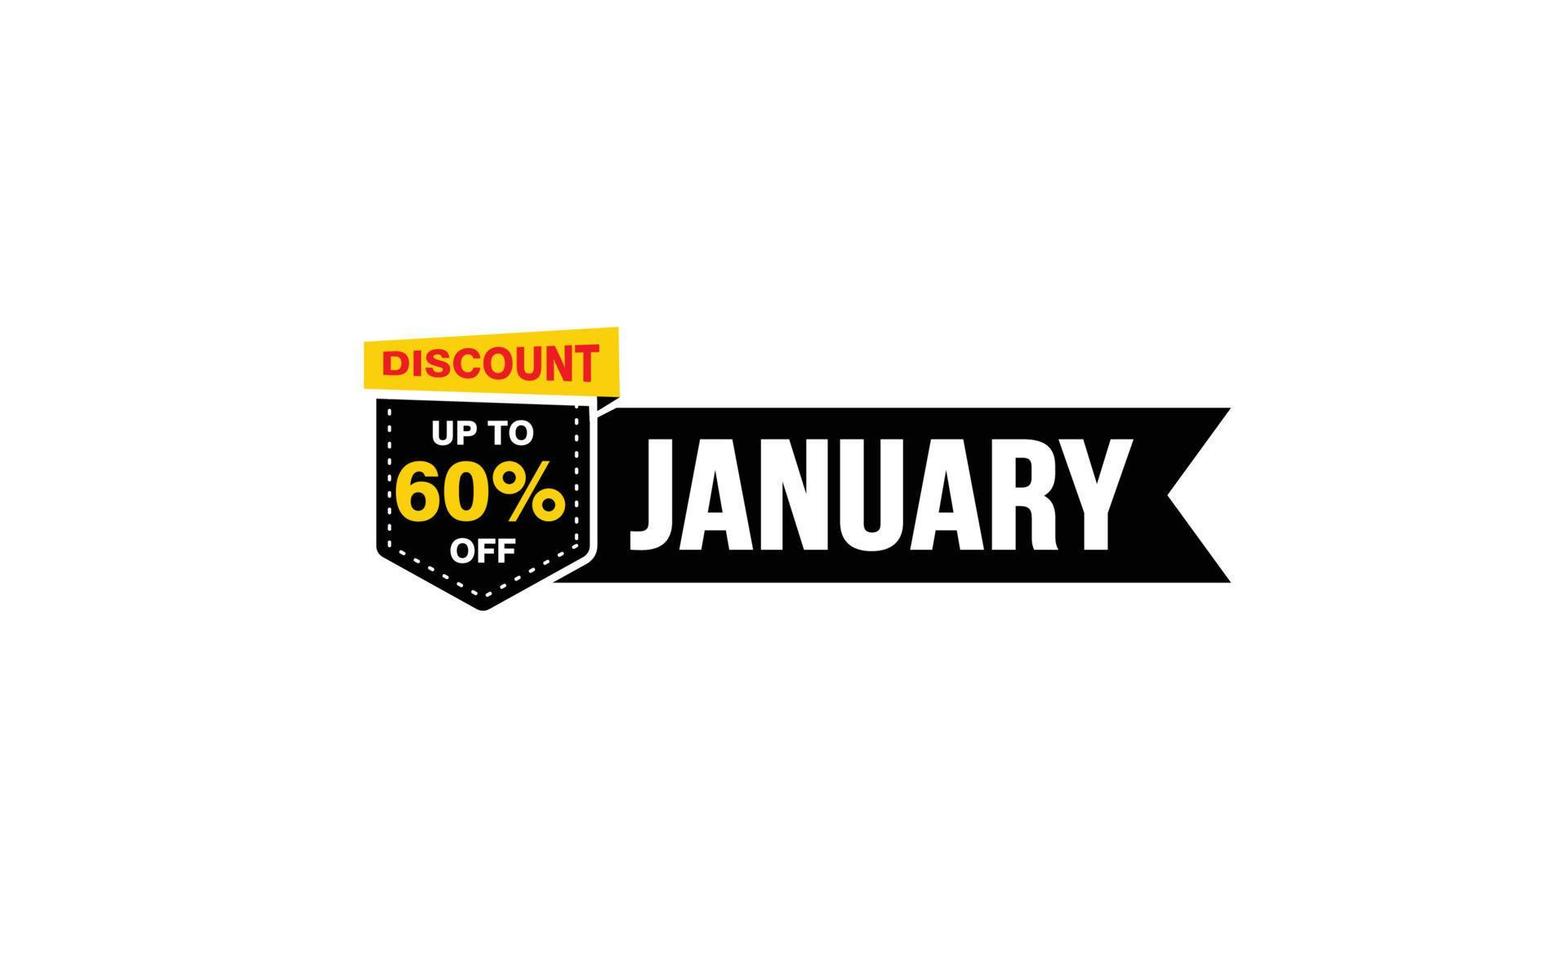 Oferta de desconto de 60% em janeiro, liberação, layout de banner de promoção com estilo de adesivo. vetor